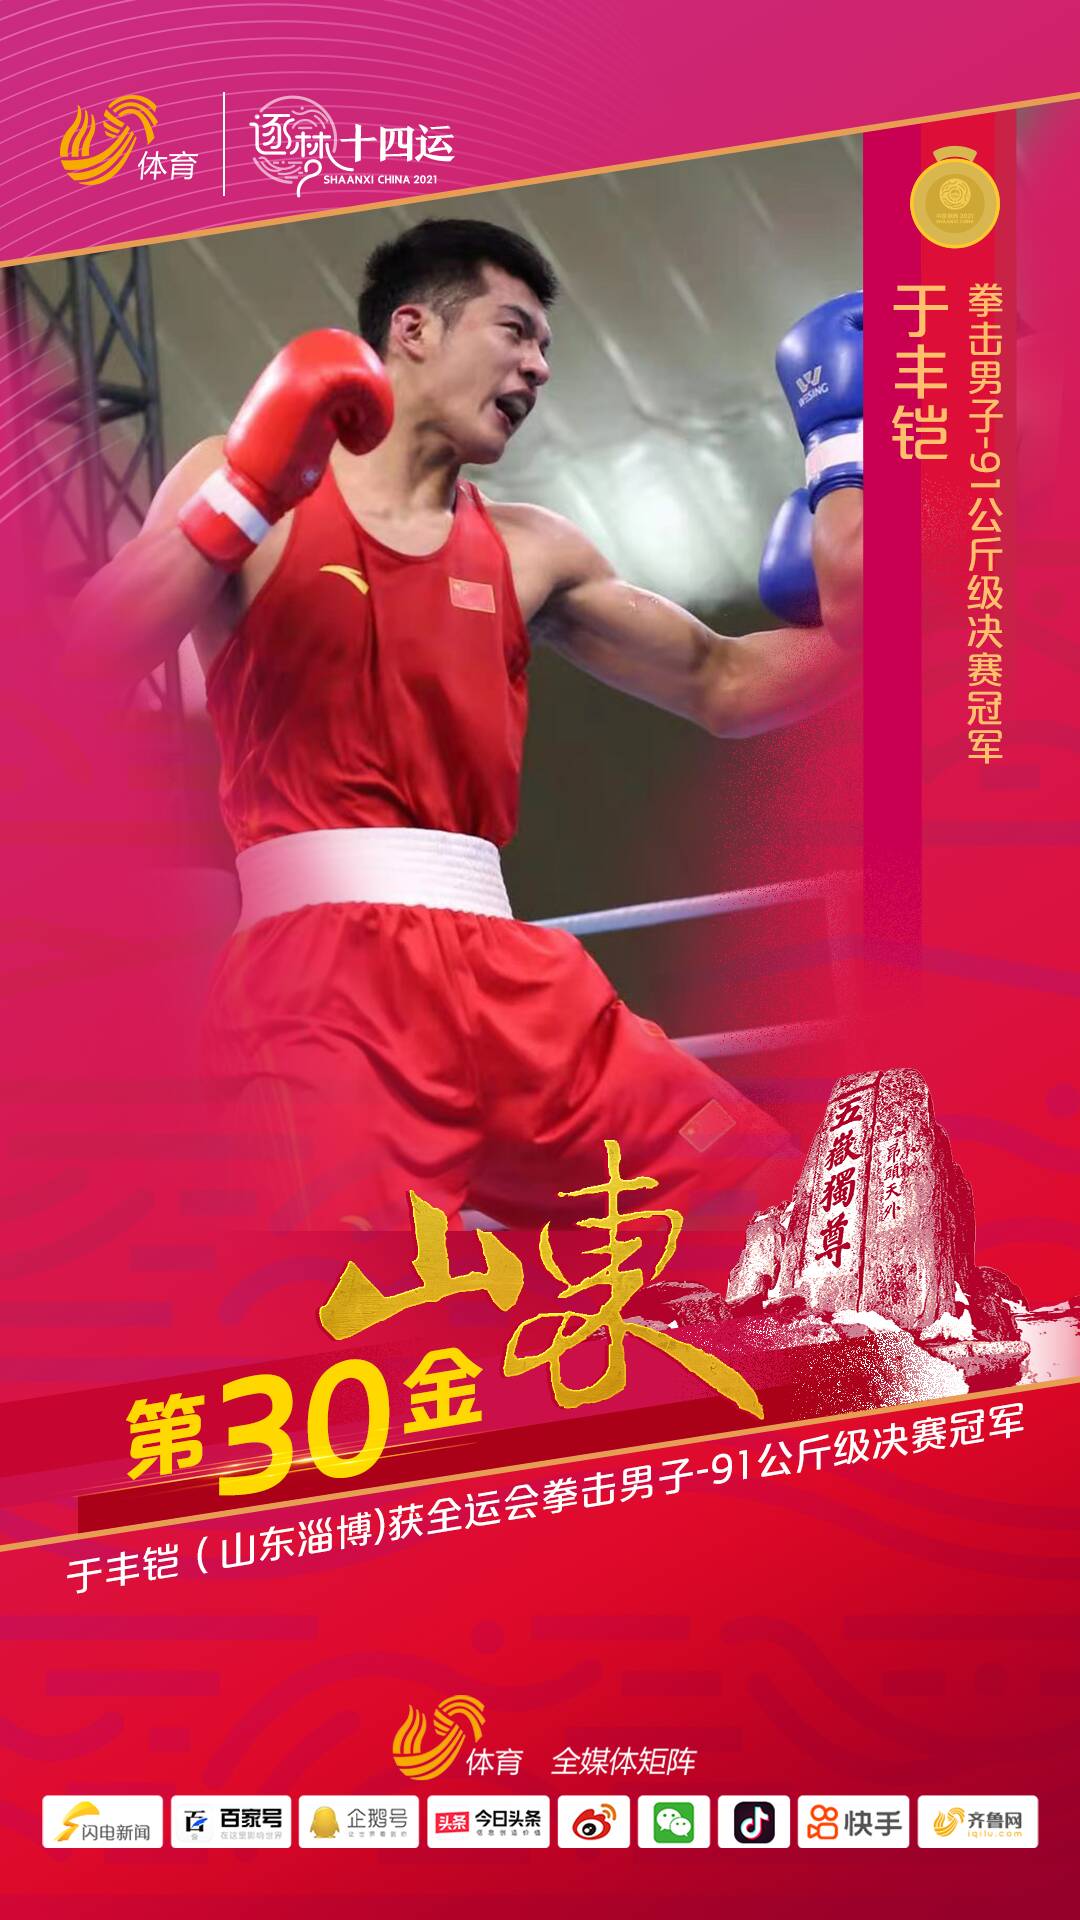 视频丨山东选手于丰铠5-0陈奕融获十四运拳击男子-91公斤级冠军